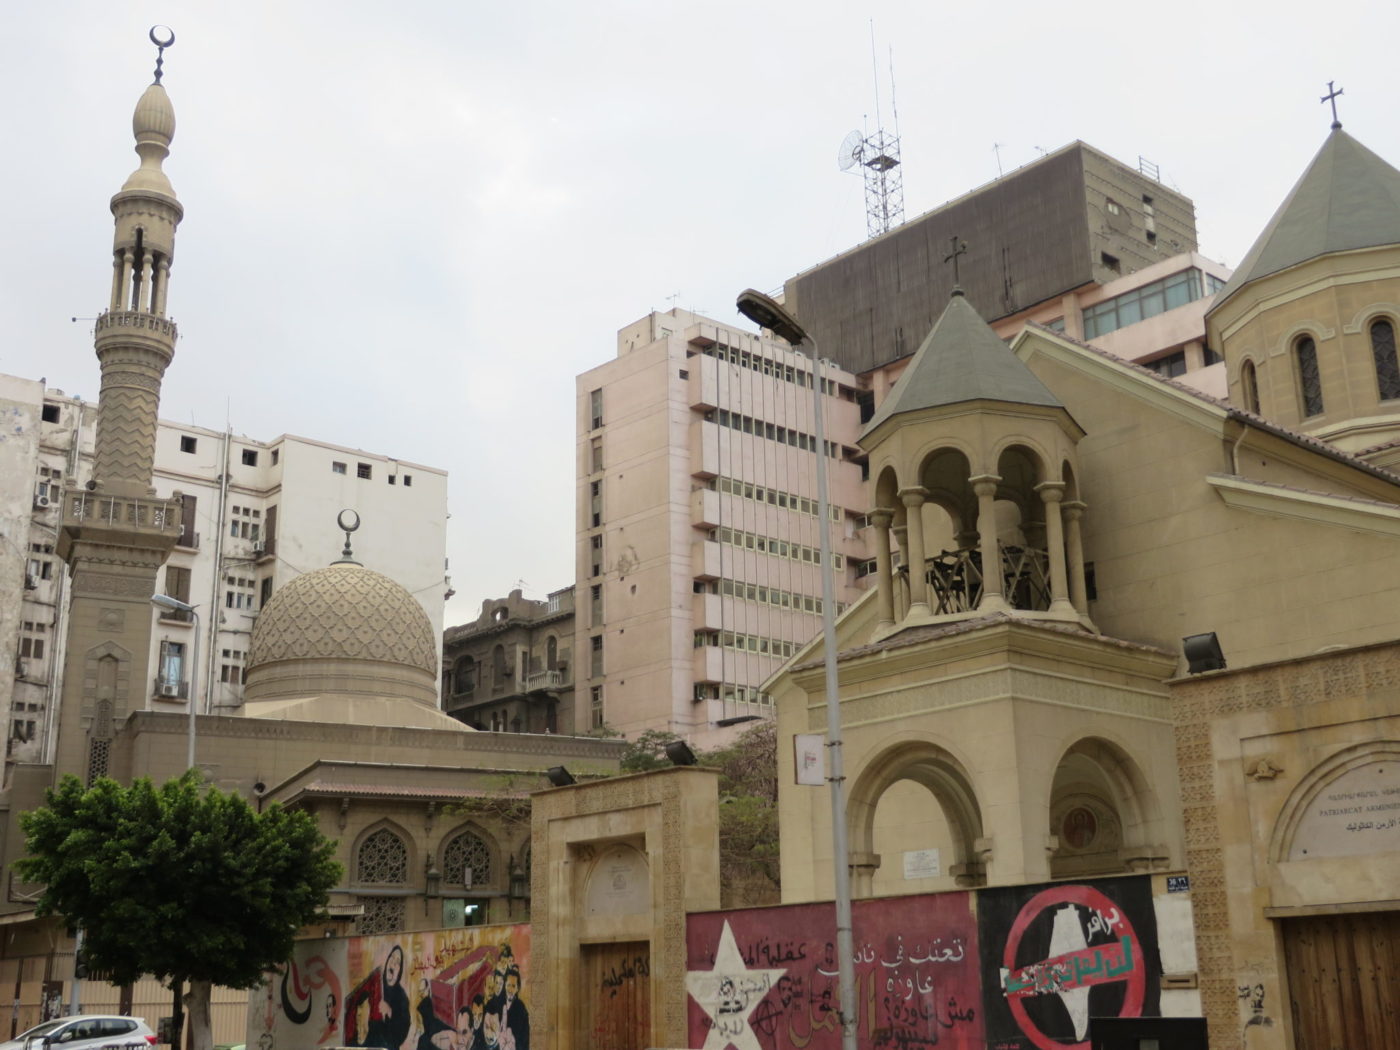 A Catholic church near an Muslim mosque